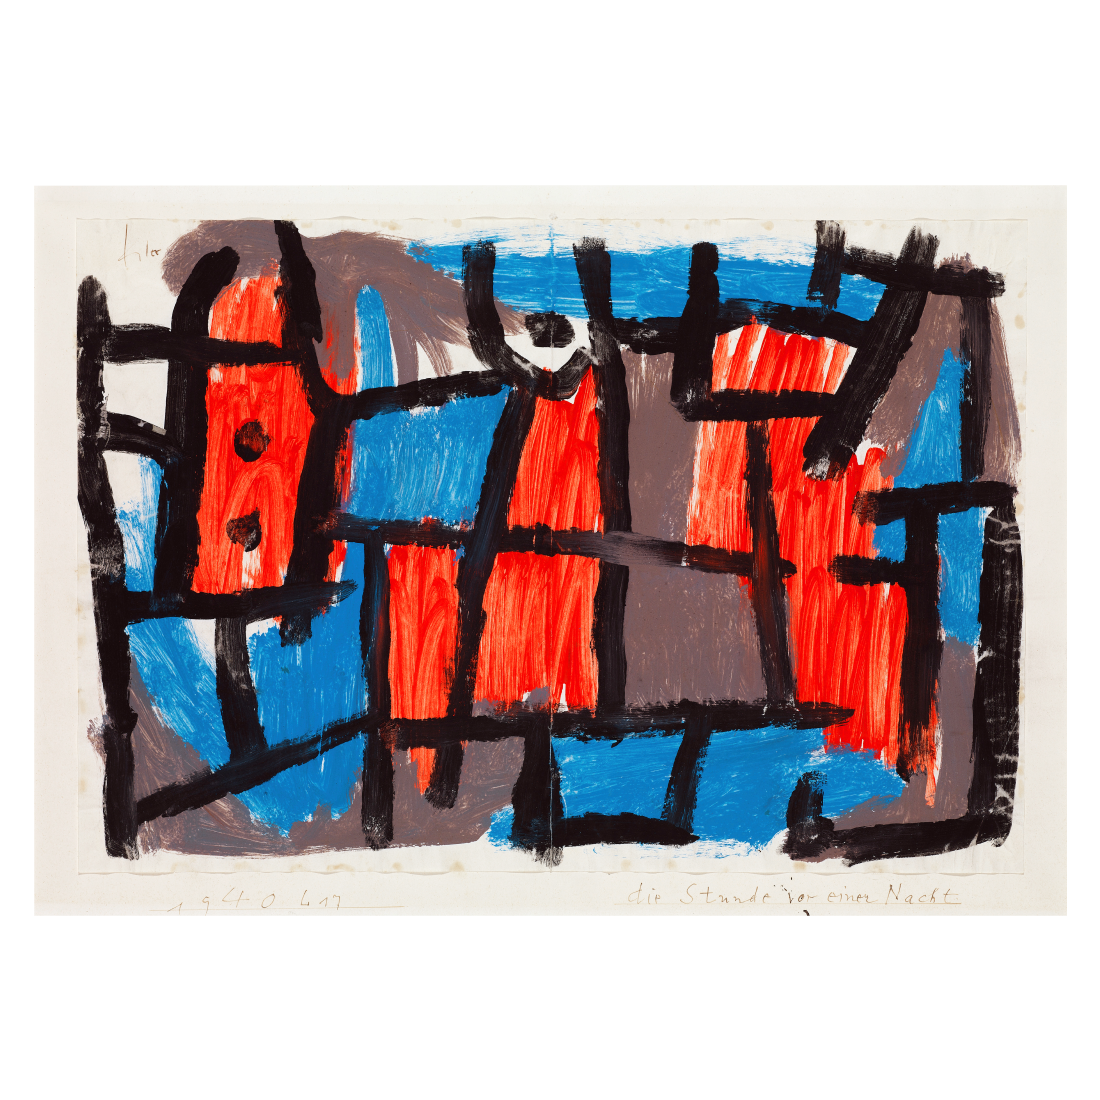 Kunstplakat med Paul Klee "Die Stunde vor Eine Nacht"